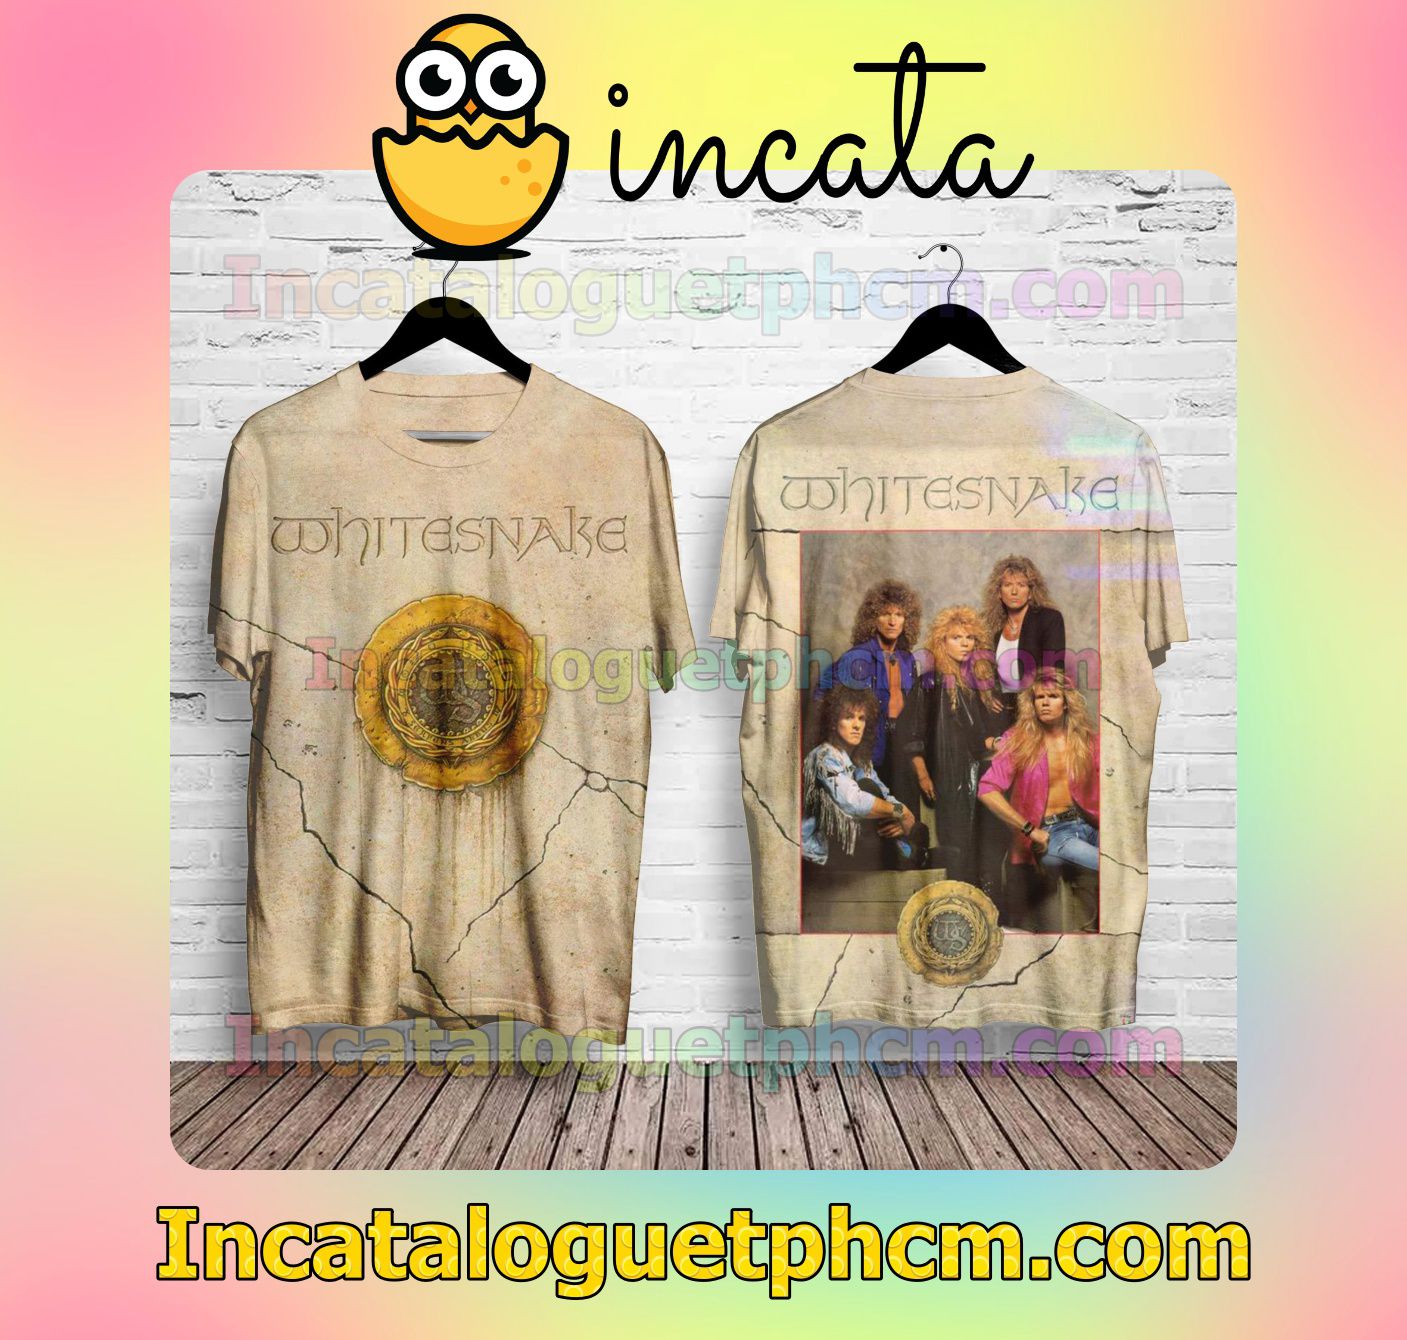 Whitesnake Self Titled Album Cover Fan Gift Shirt